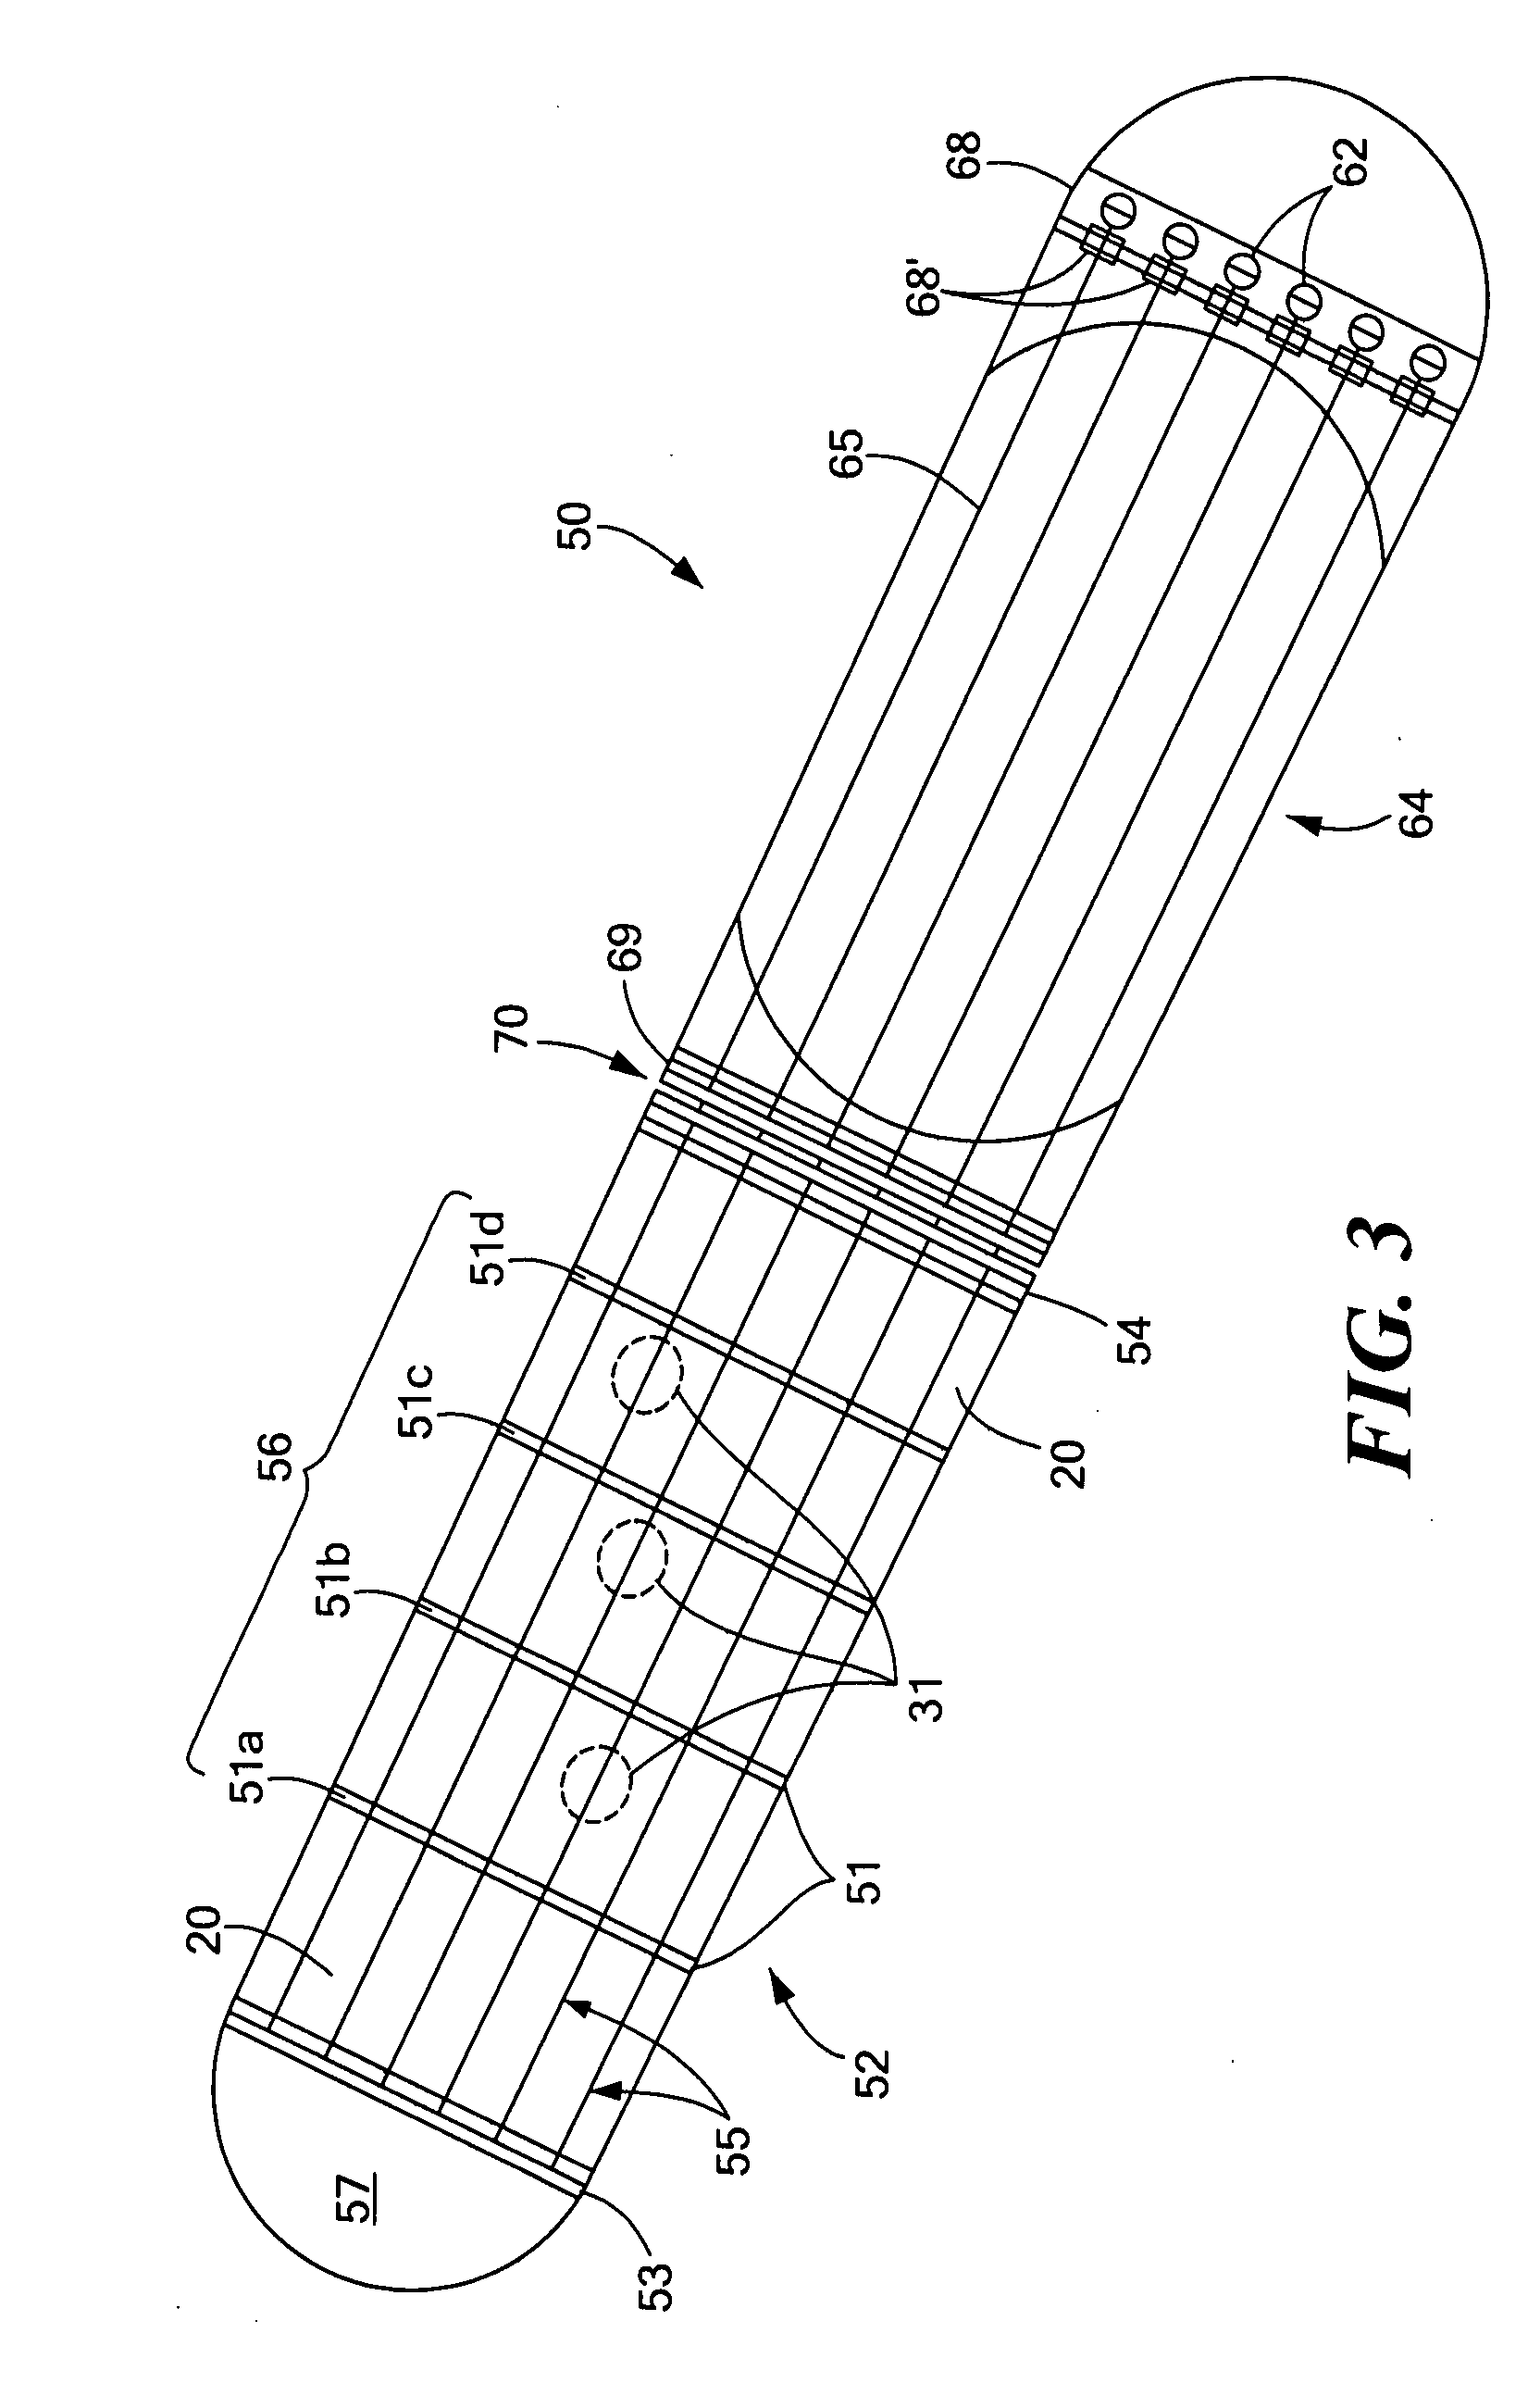 Folding electronic instrument